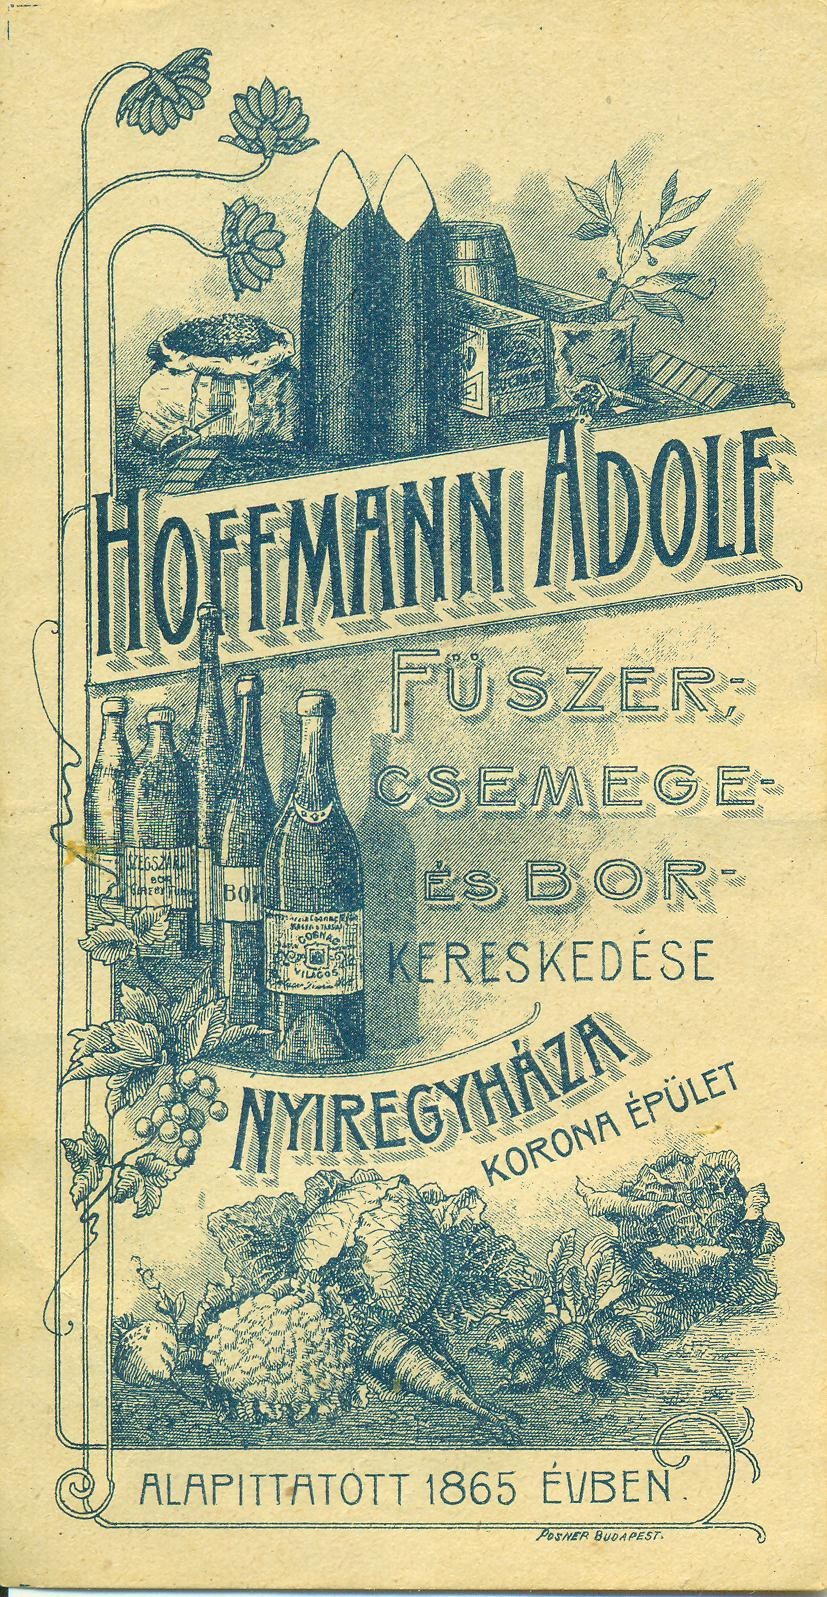 Hoffmann Adolf Fűszer-, Csemege-, és Bor kereskedése, Nyíregyháza (Magyar Kereskedelmi és Vendéglátóipari Múzeum CC BY-NC-SA)